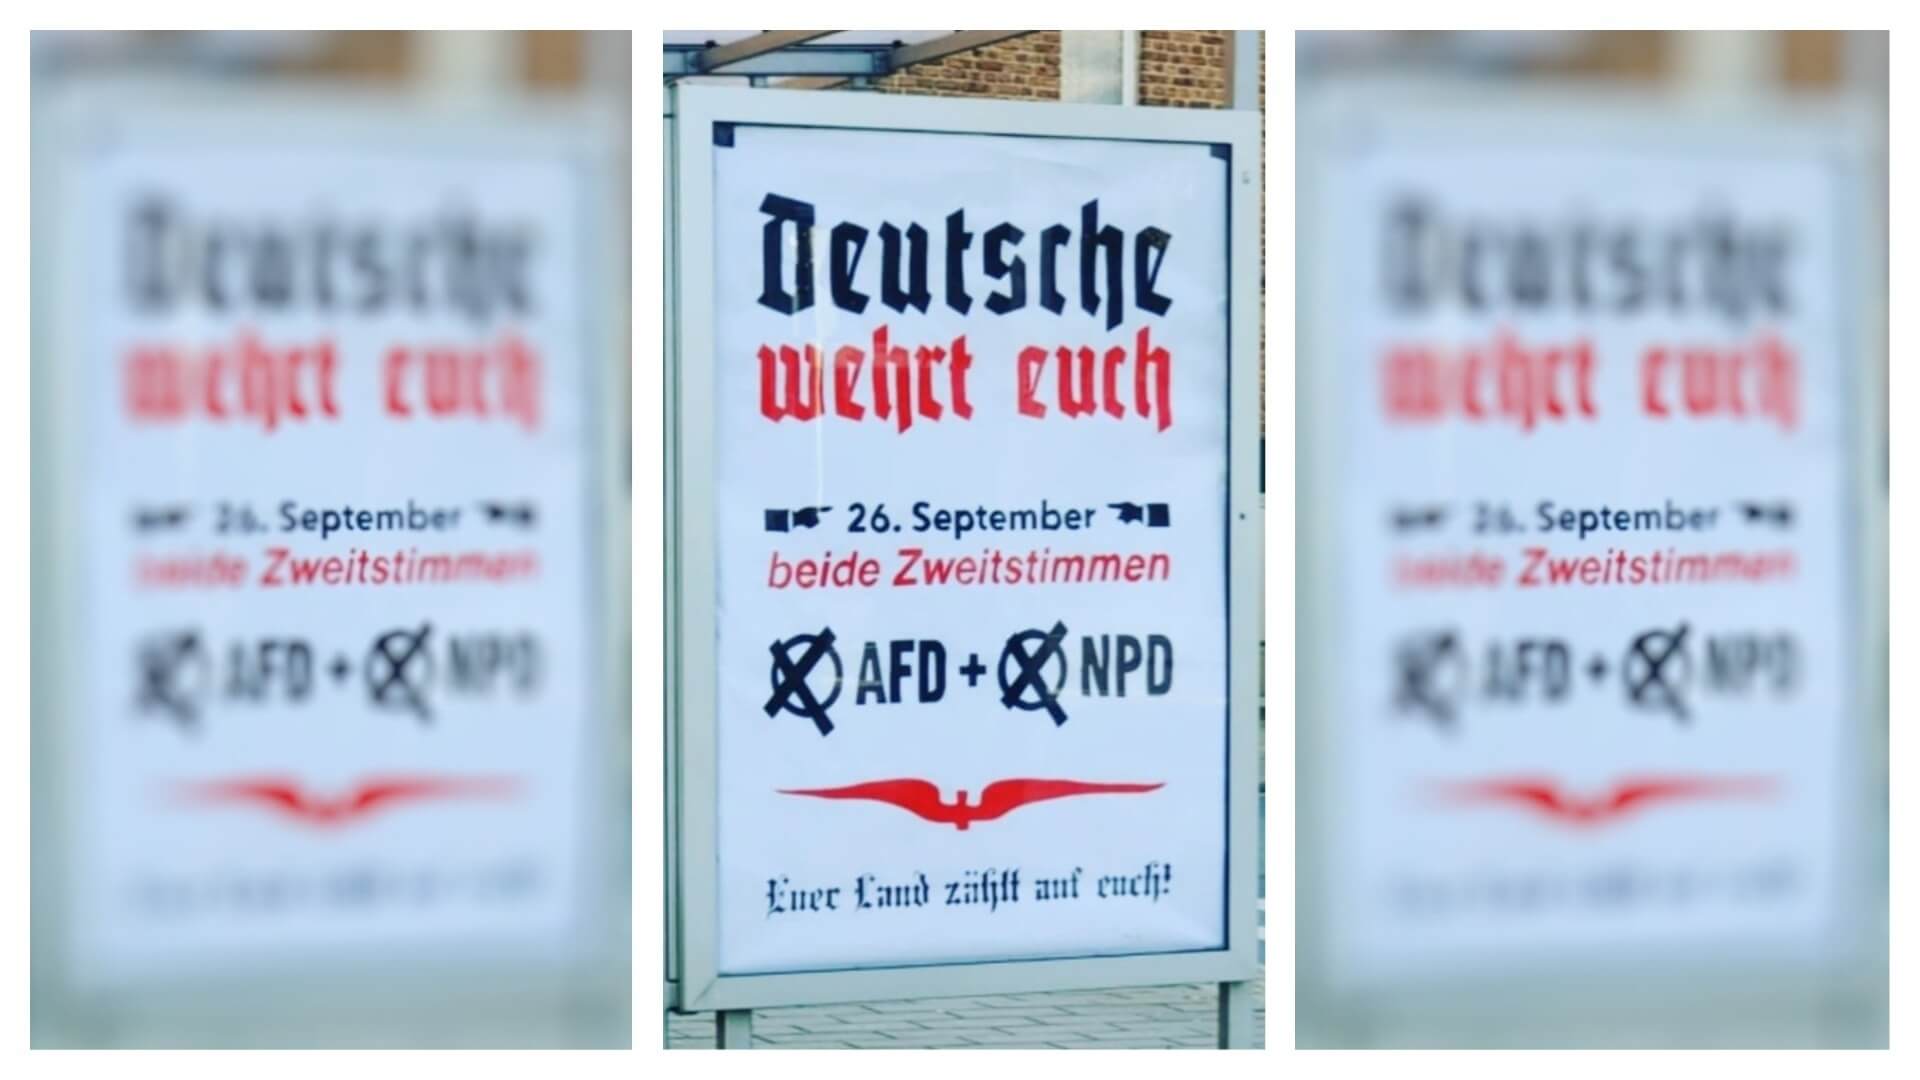 Collage aus dem betreffenden Plakat mit der Aufschrift "Deutsche wehrt euch! 26. September beide Zweitstimmen AfD und NPD"